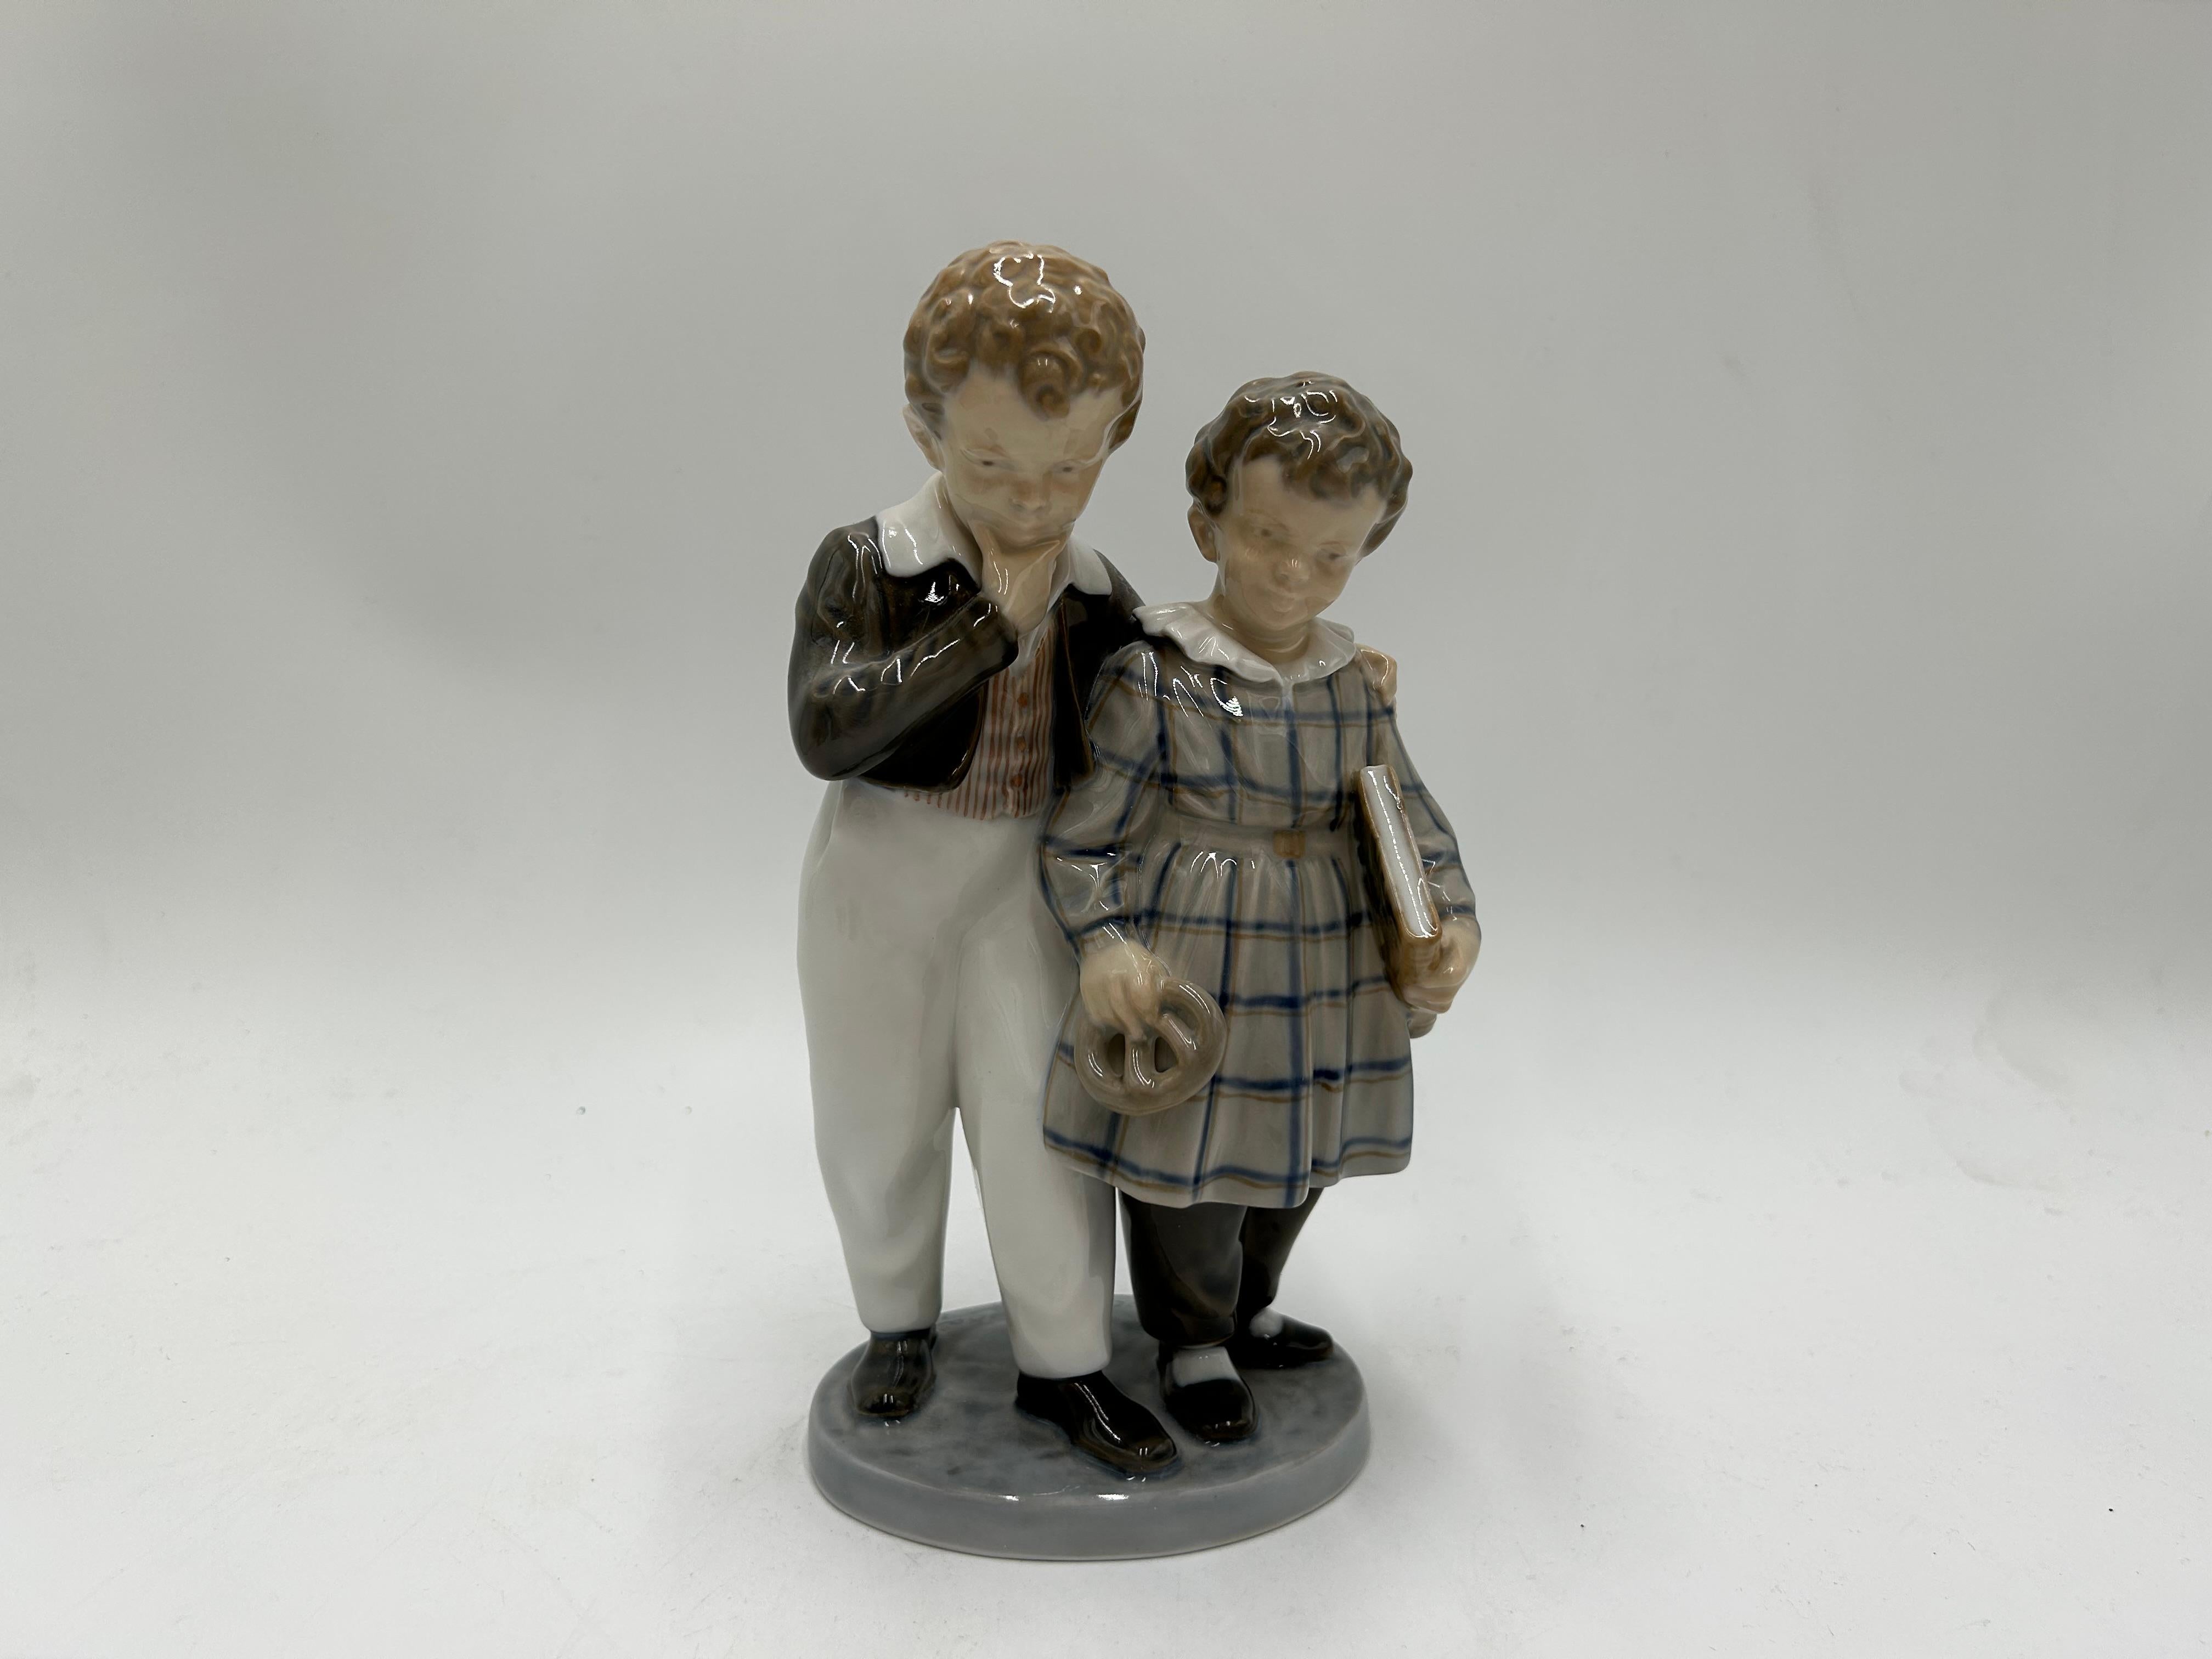 Porzellanfigur eines Kindergeschwisterpaares Modell #1761
Produziert von der dänischen Manufaktur Royal Copenhagen
1961 verwendete Marke.
Sehr guter Zustand, keine Schäden
Höhe: 21cm
Breite: 11cm
Tiefe: 8 cm